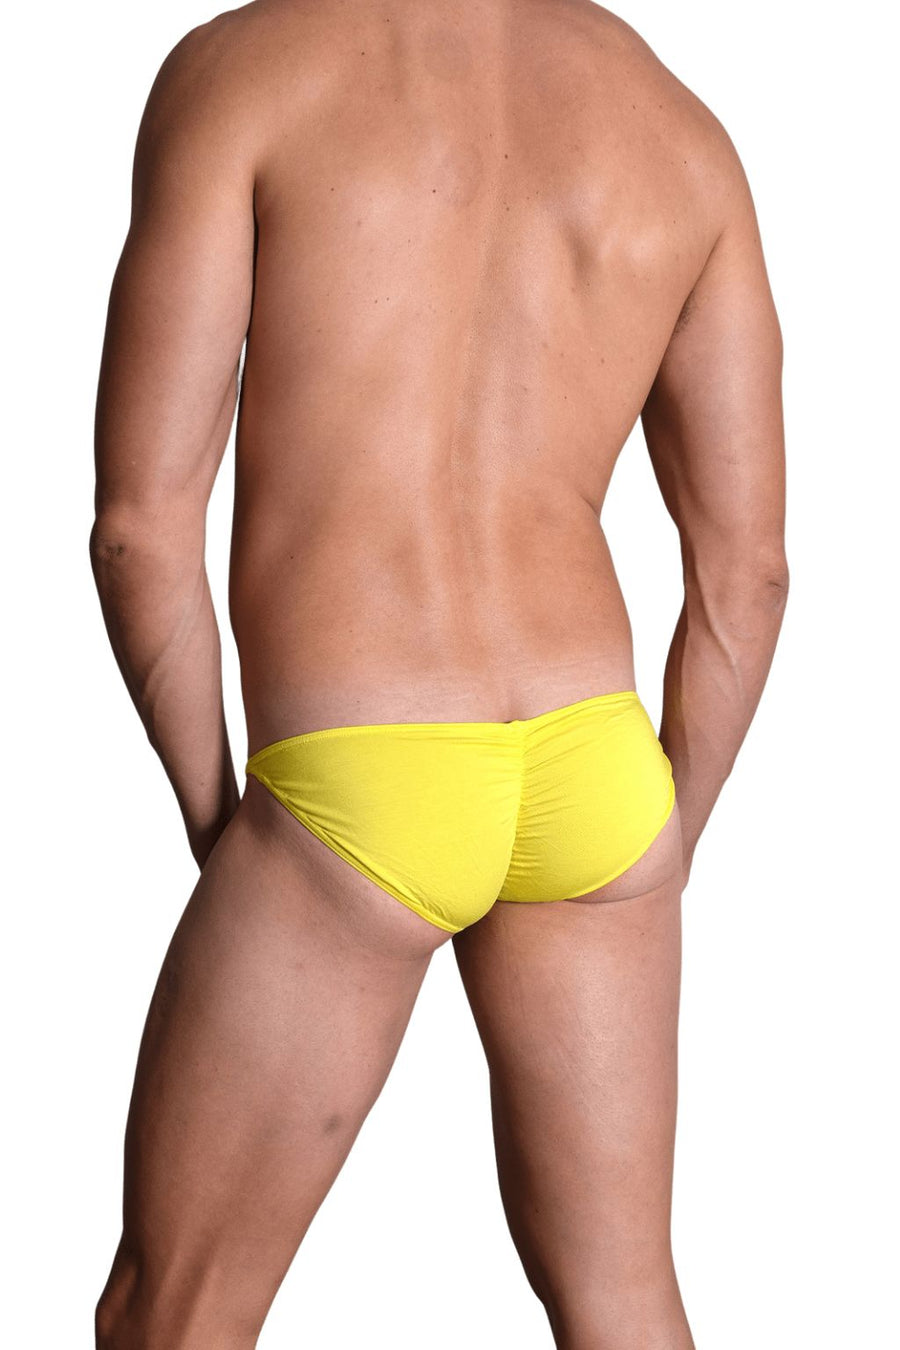 BfM Mens Lowrise Ruched Micro String Bikini Underwear – Bodywear